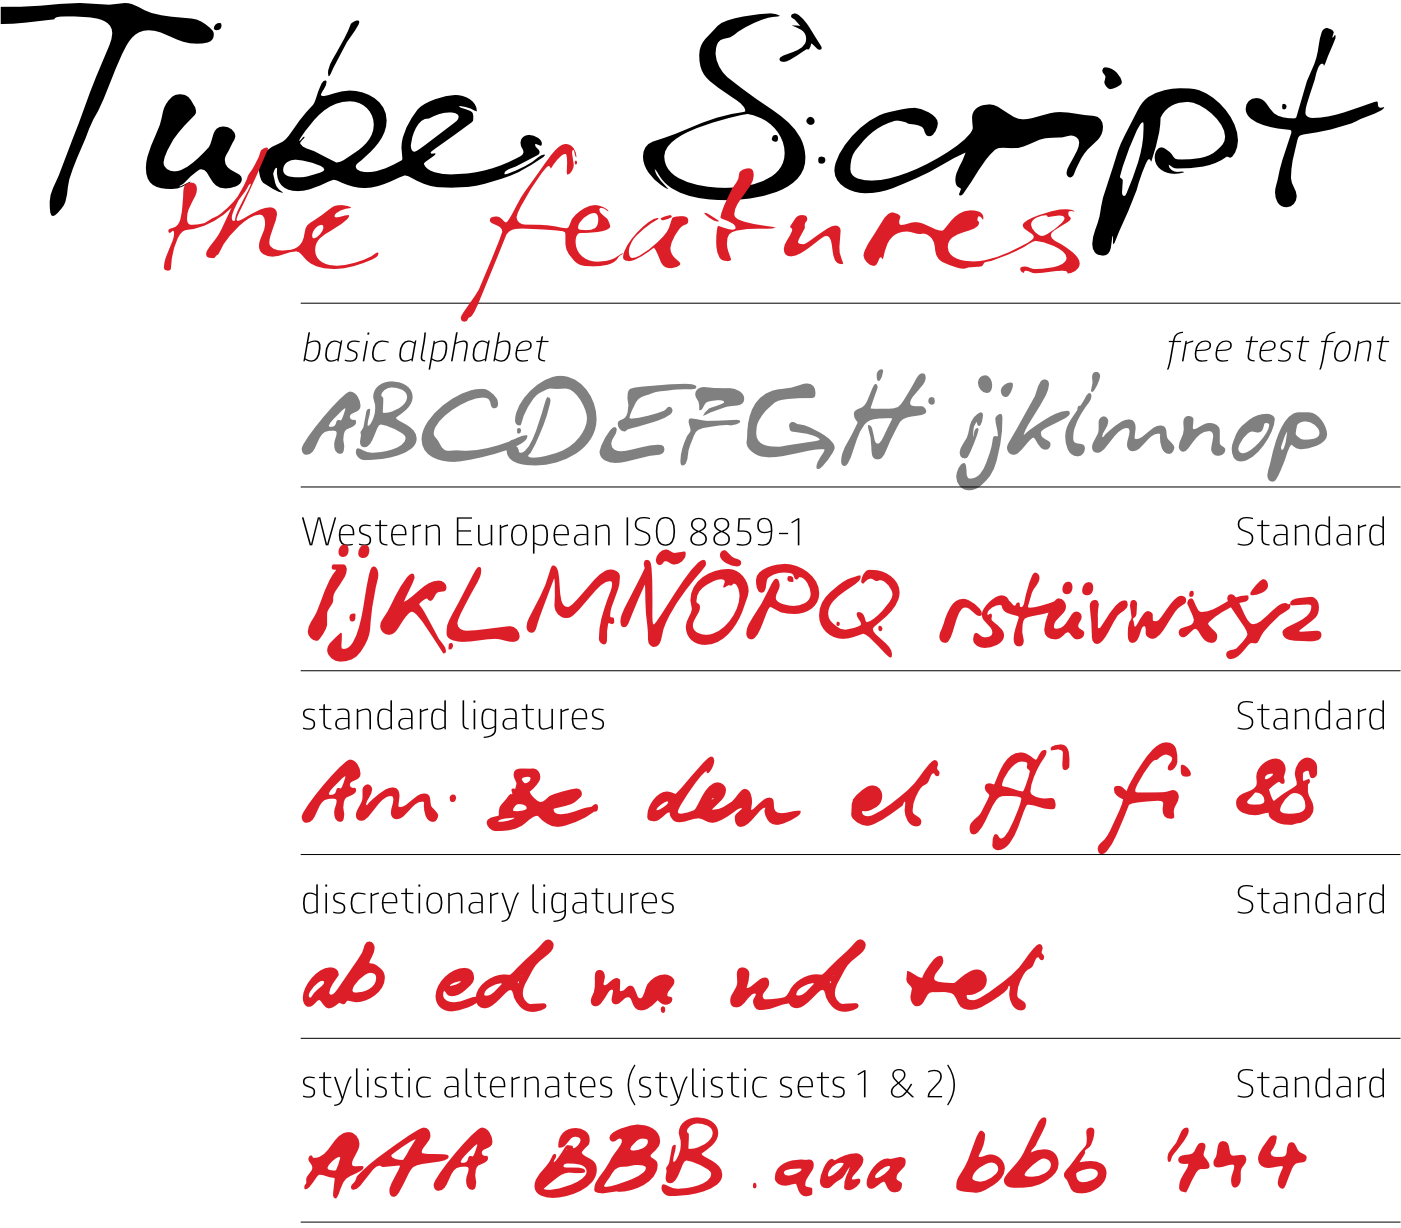 Tube Script Font features